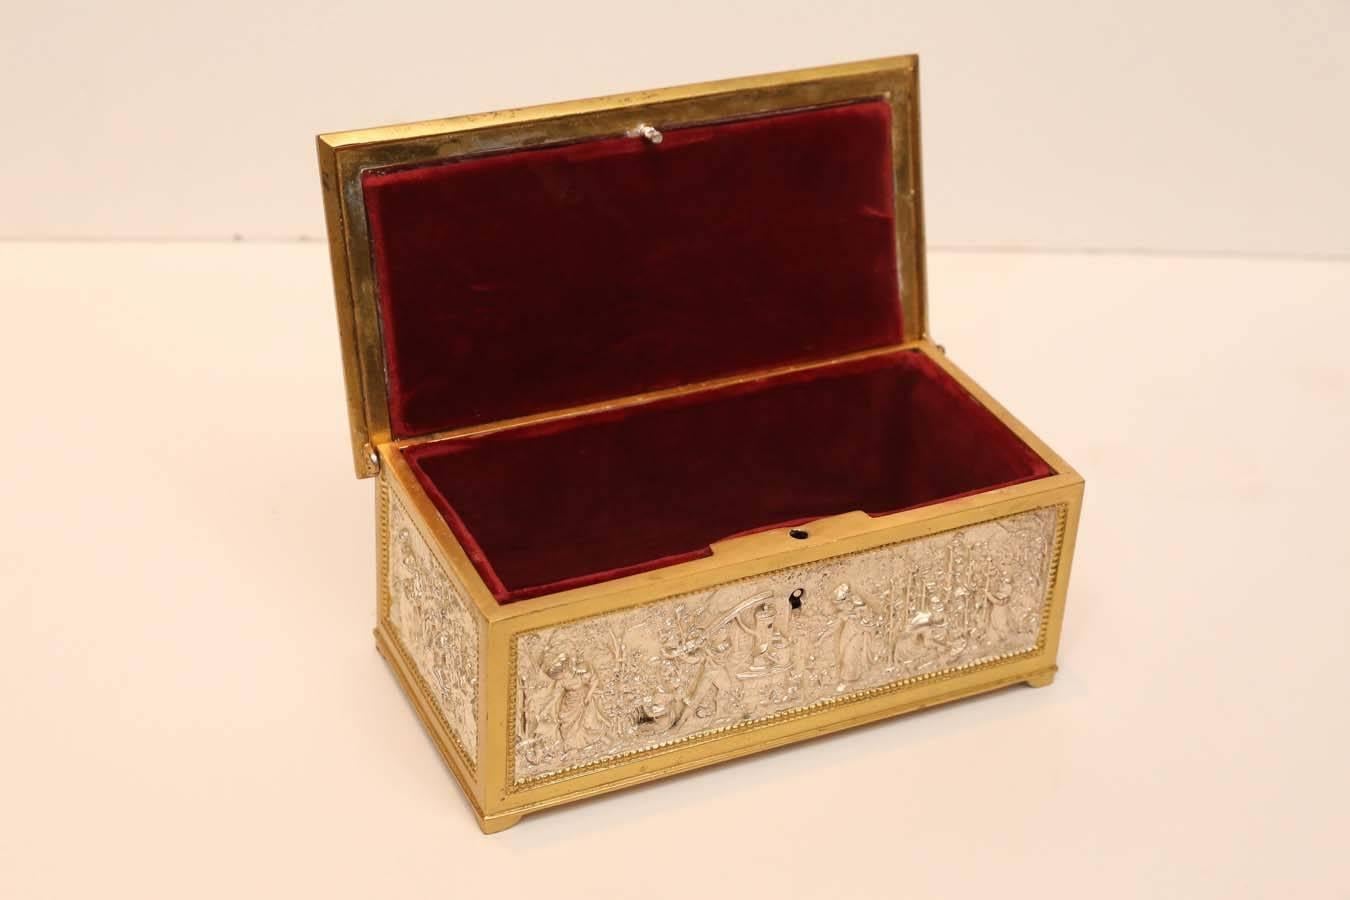 French European Silver and Bronze Dore Decorative Box